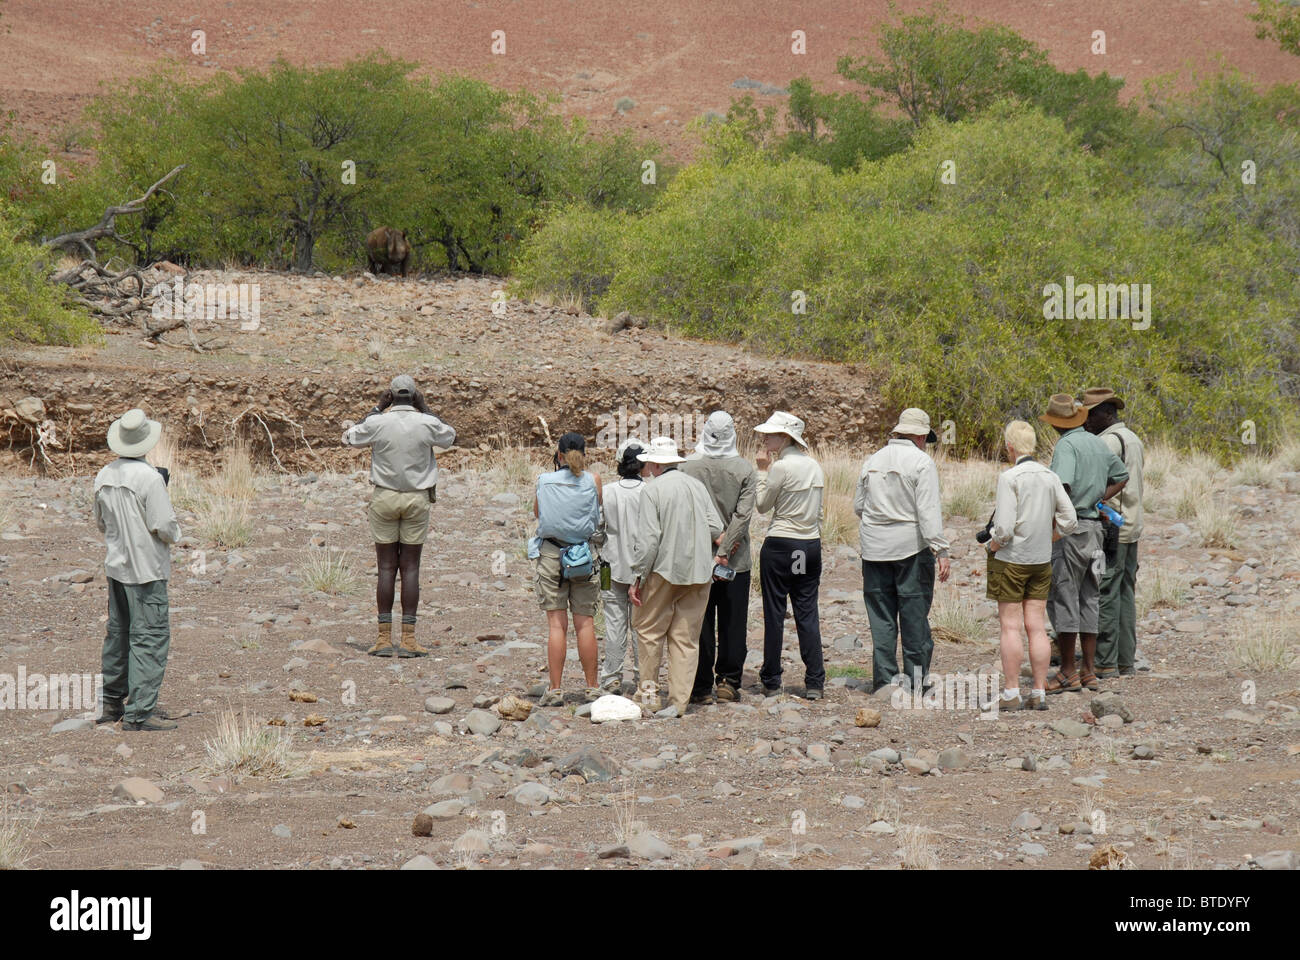 Gruppo di turisti a guardare il rinoceronte nero su safari a piedi Foto Stock